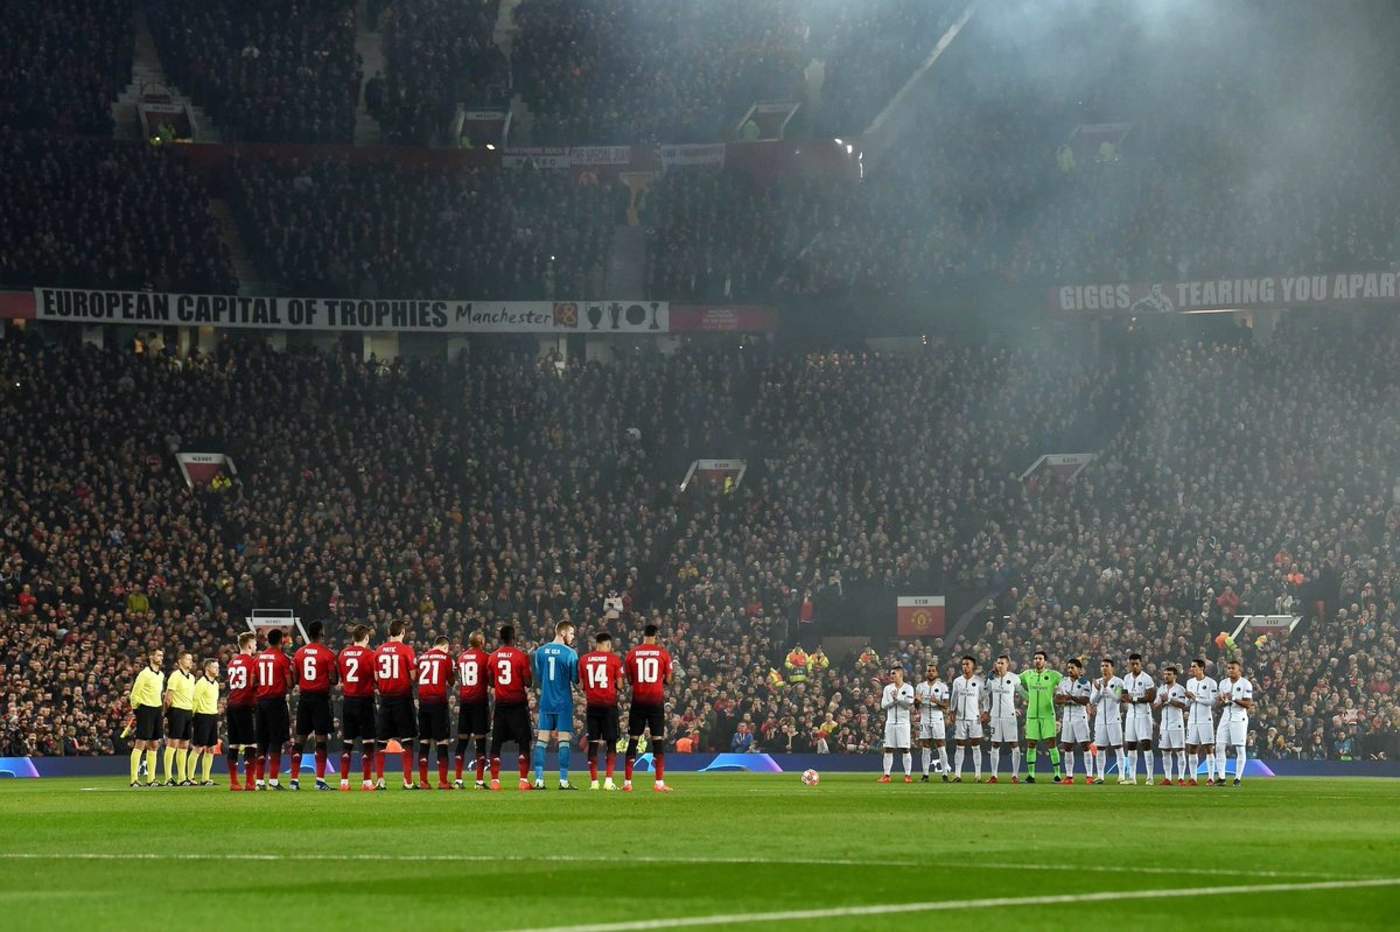 Old Trafford honró la memoria del fallecido Emiliano Sala con un minuto de aplausos. (Especial)